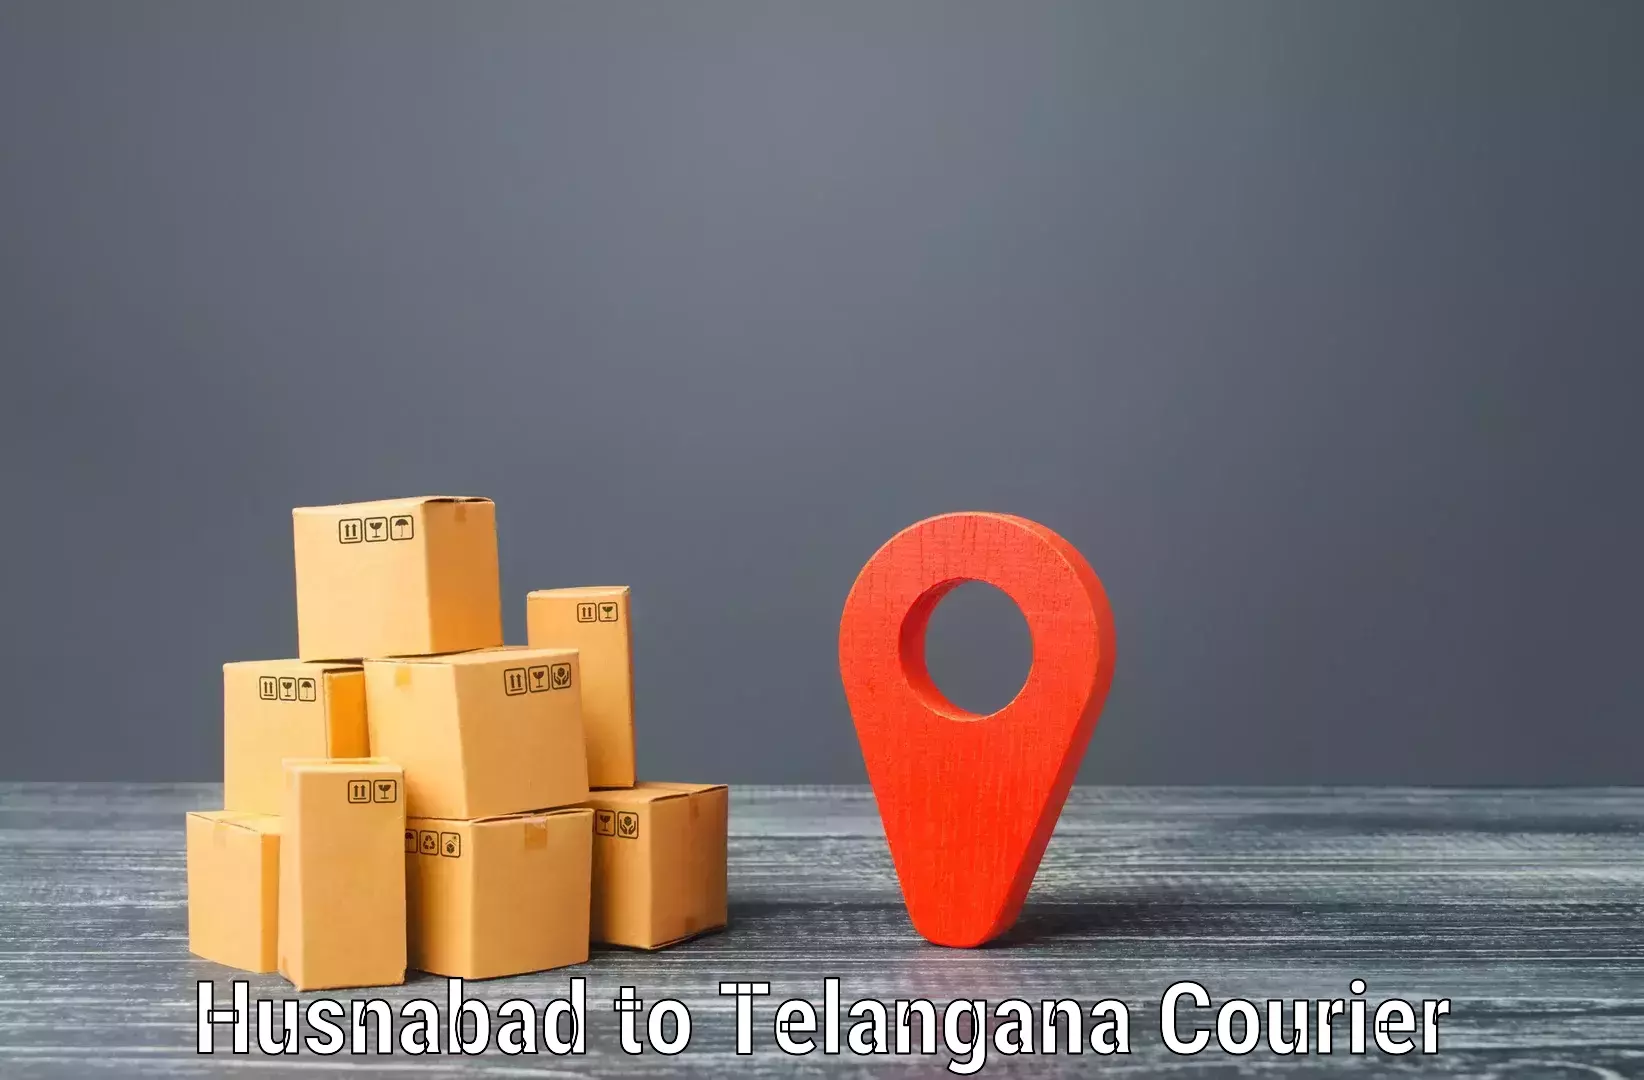 Cargo delivery service Husnabad to Kothagudem